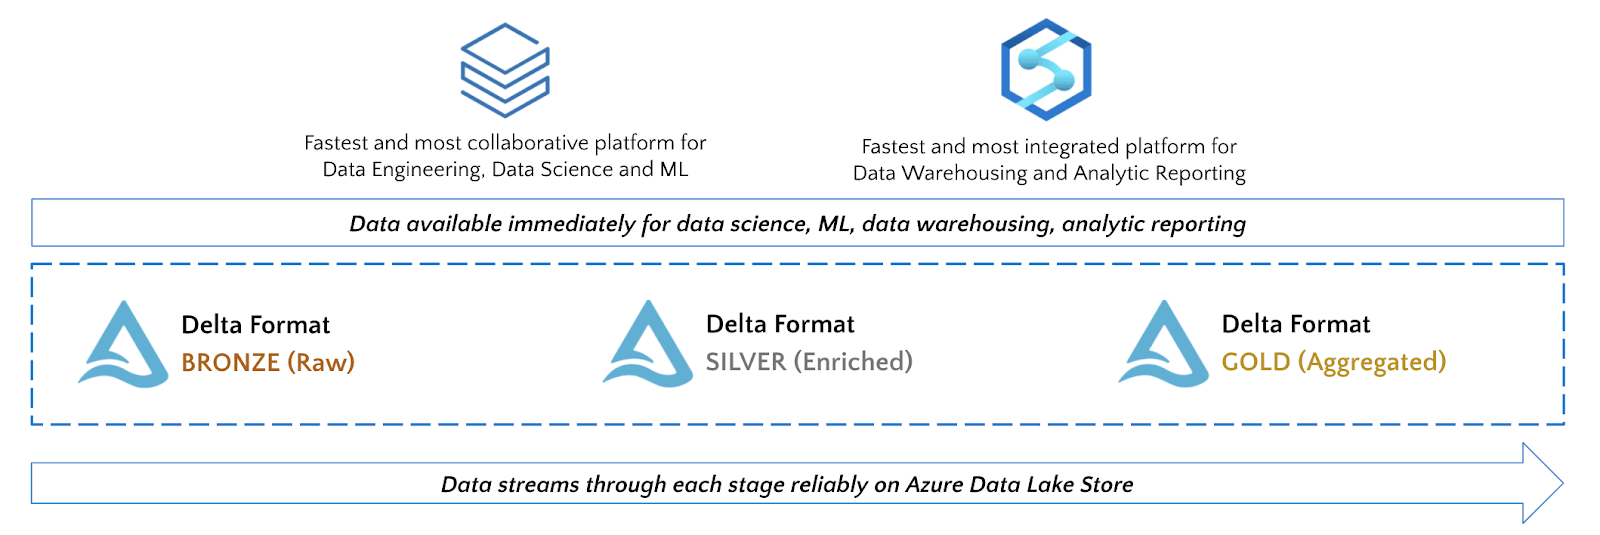 Azure Databricks と Azure Synapse を活用し、チームの要件に応じて最適なツールを使用してください。